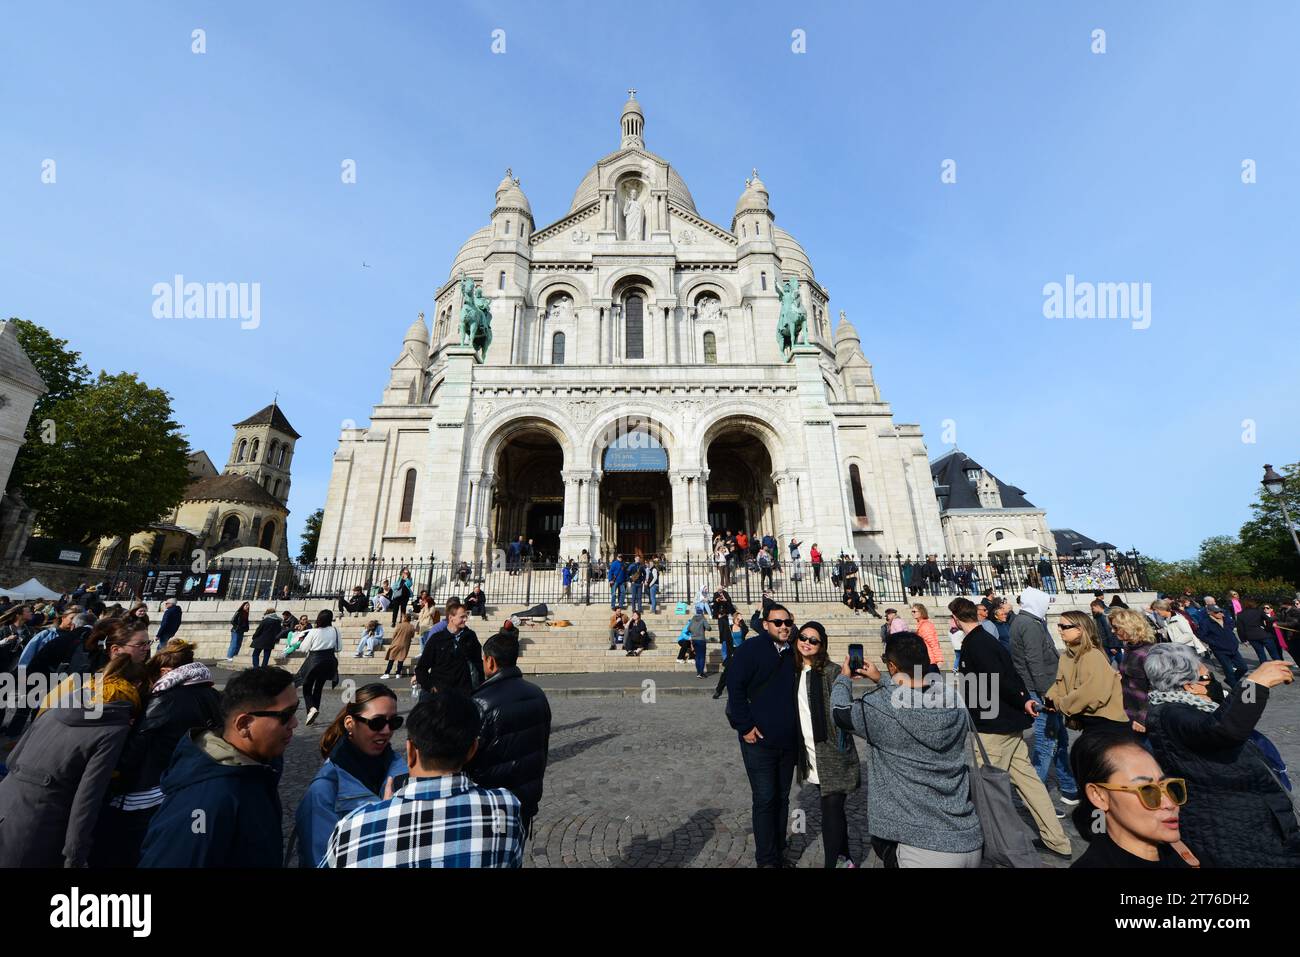 The Basilica of Sacré-Cœur de Montmartre in Paris, France. Stock Photo